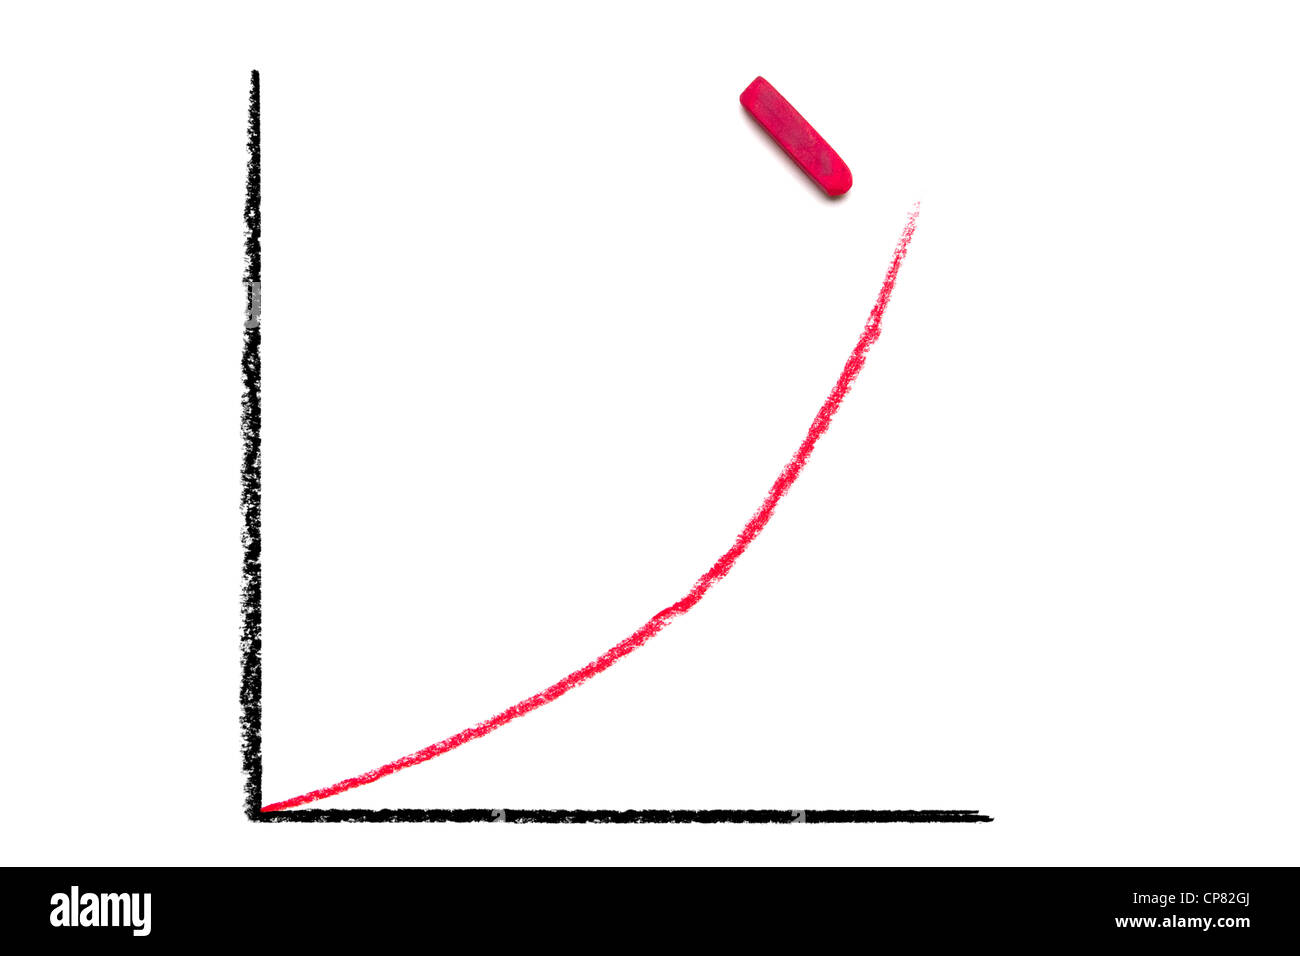 Craie pastel dessiné à la main graphique avec axes et noir ligne rouge virant vers le haut. Morceau de craie pastel rouge illustré. Isolé sur blanc. Banque D'Images